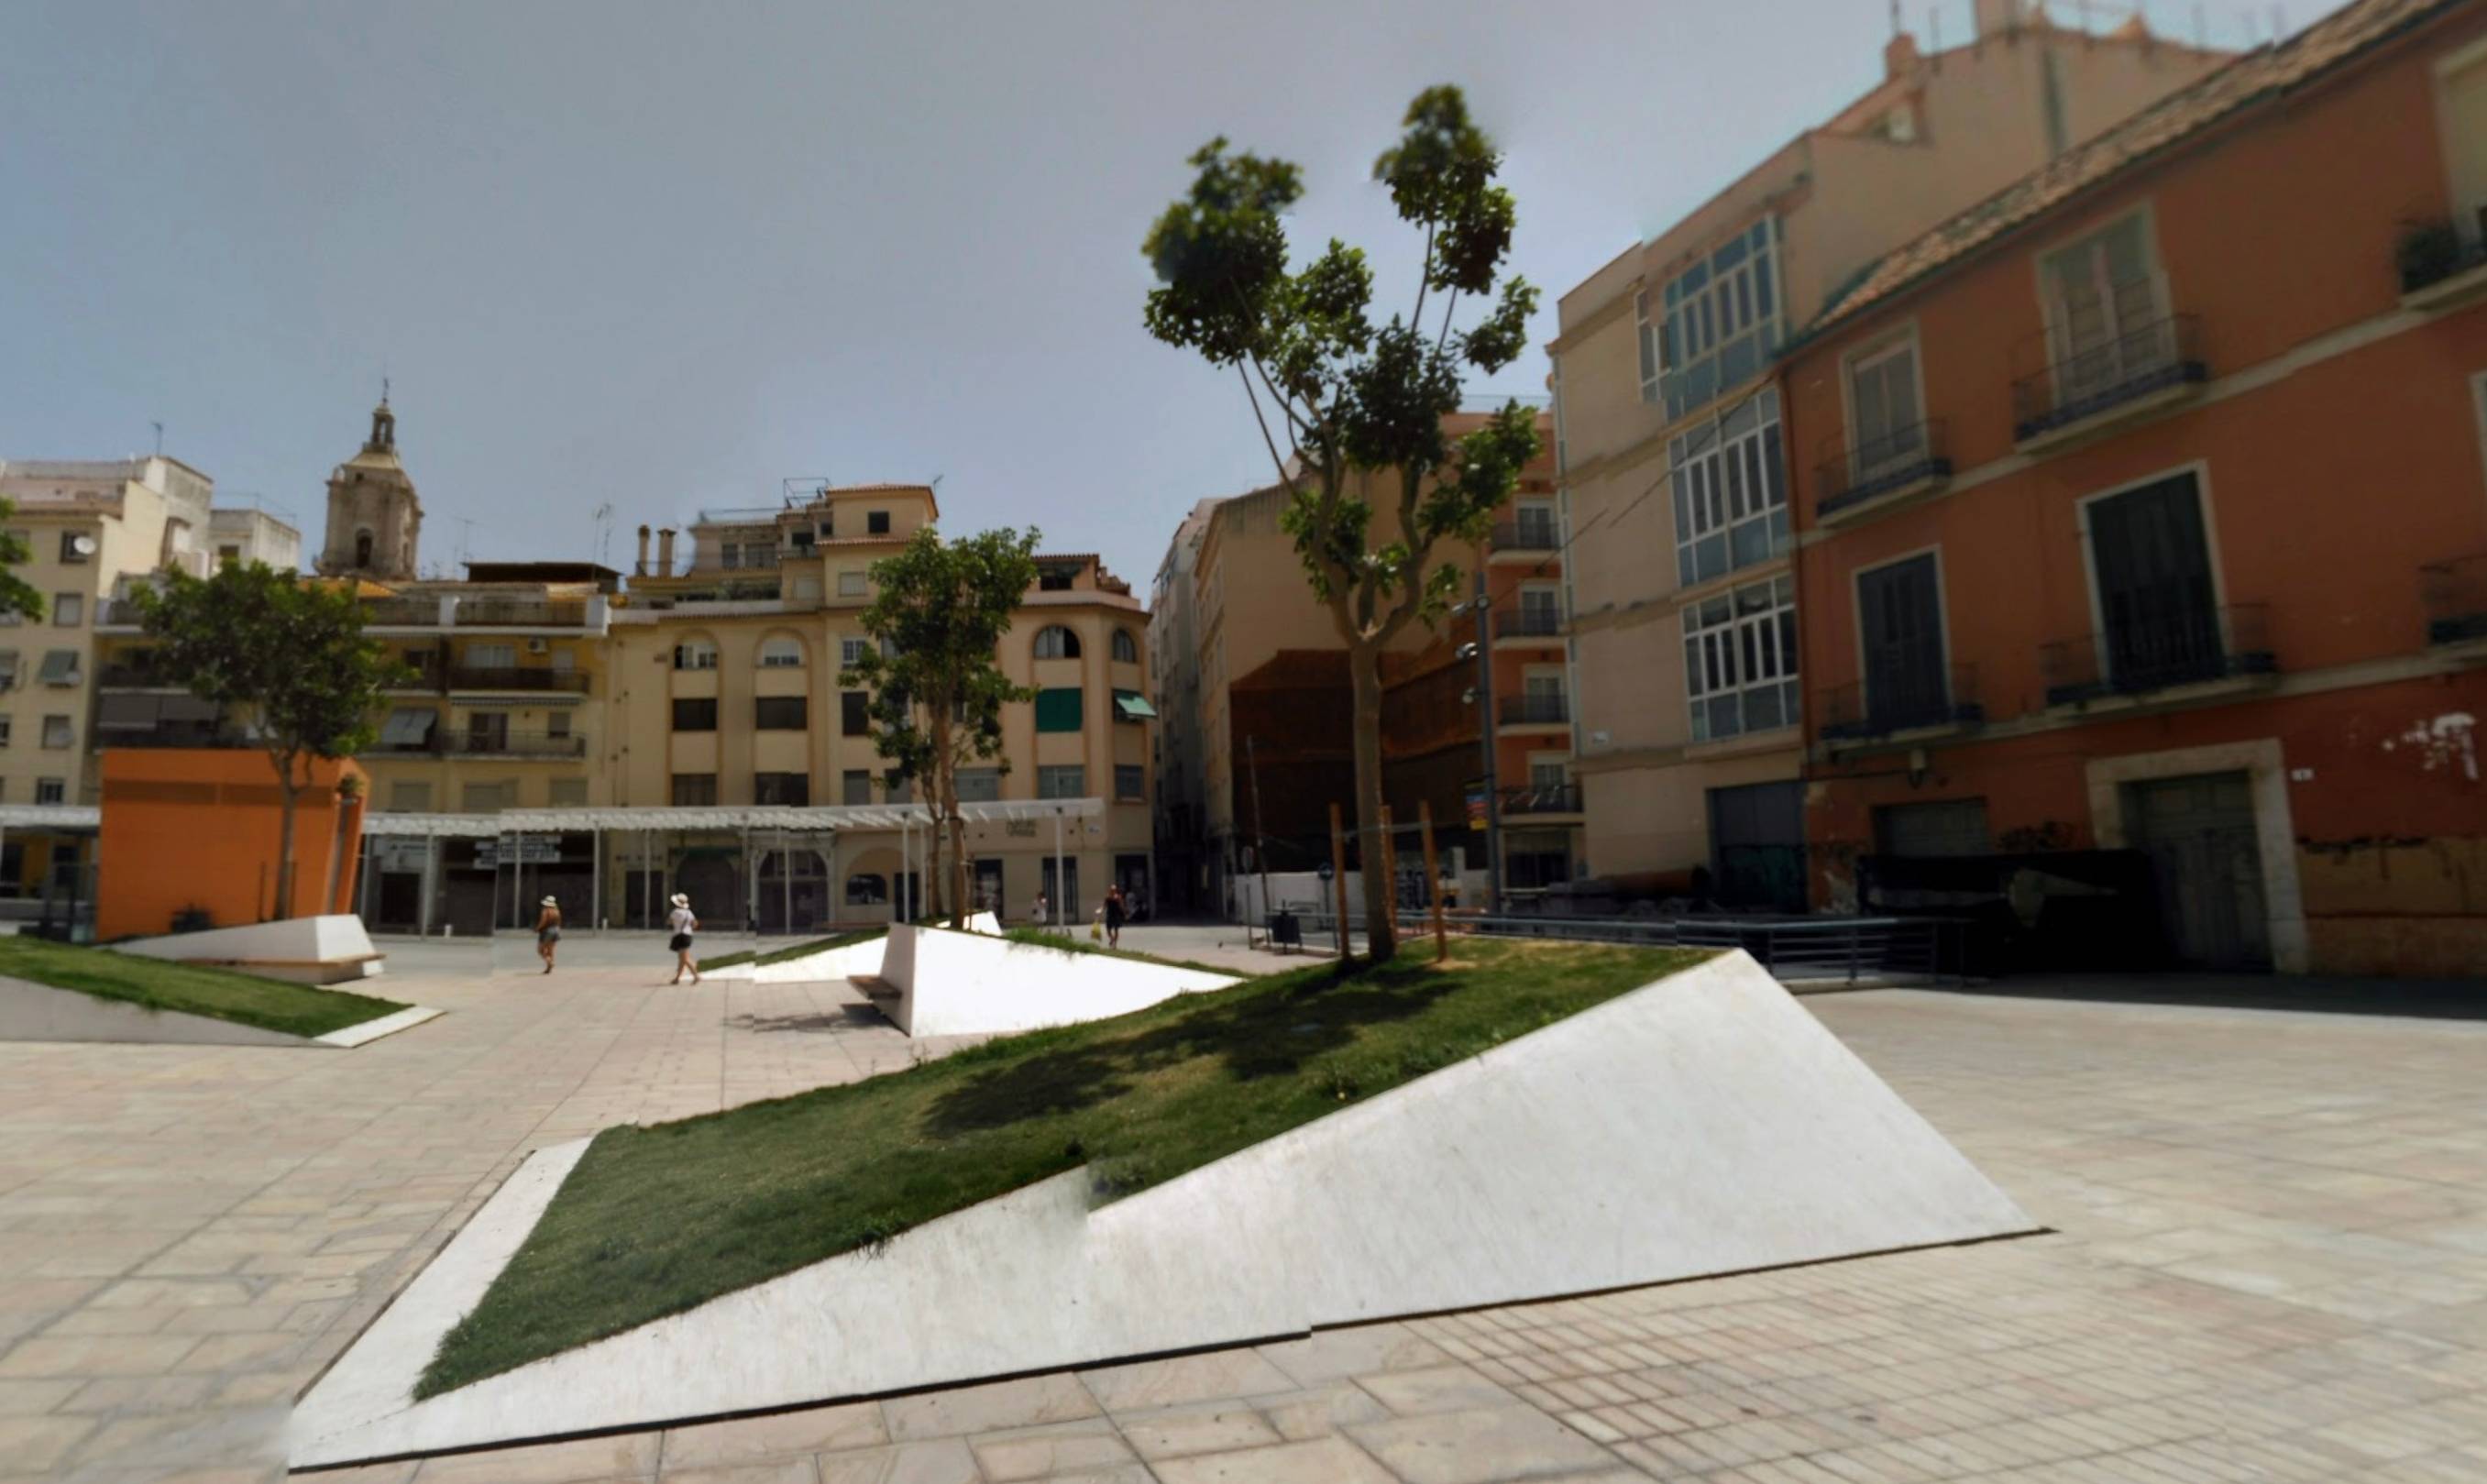 La plaza de Enrique García-Herrera, más conocida como plaza de Camas, en Málaga, donde tuvo lugar el suceso, en una imagen de Google Maps.